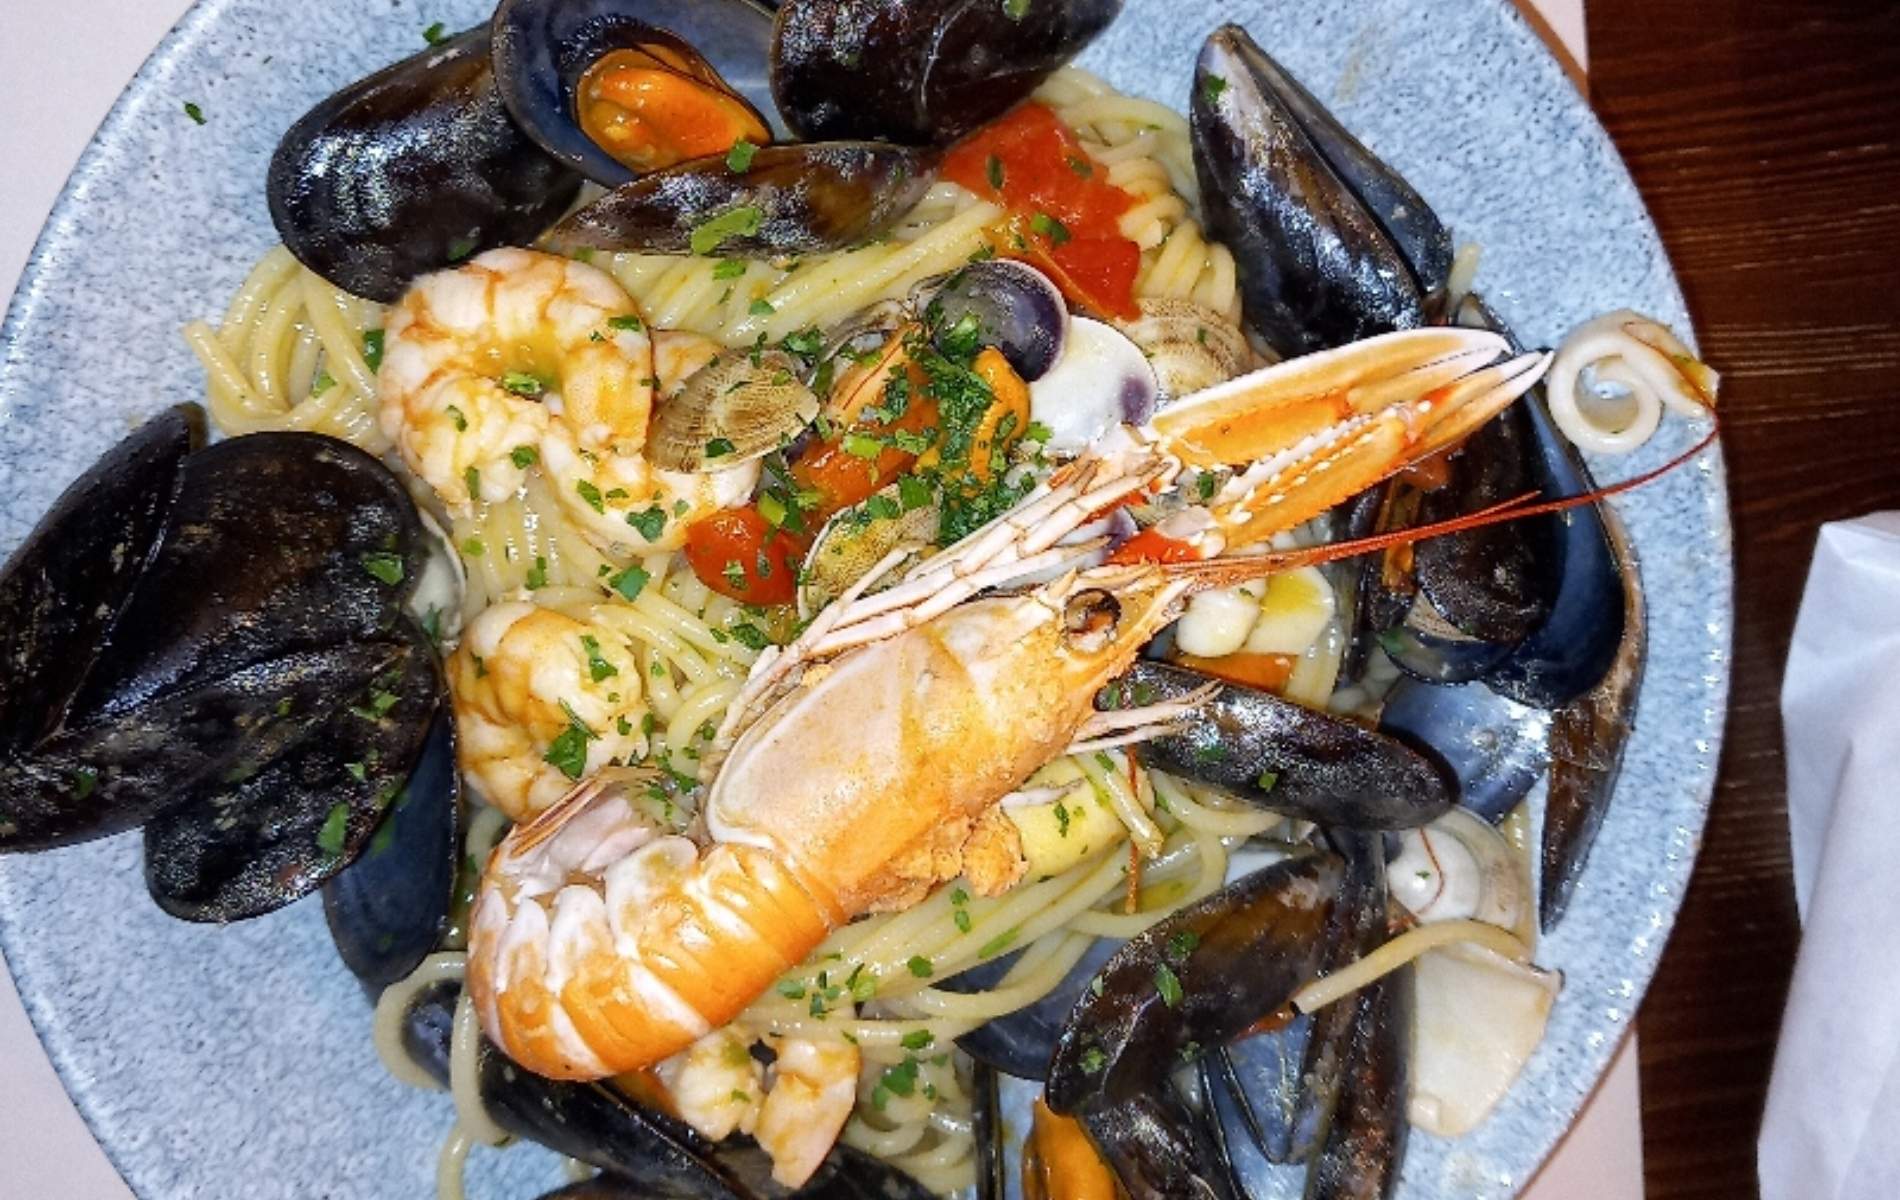 Aprenda a preparar fideuá, prato típico espanhol com frutos do mar, Gastronomia